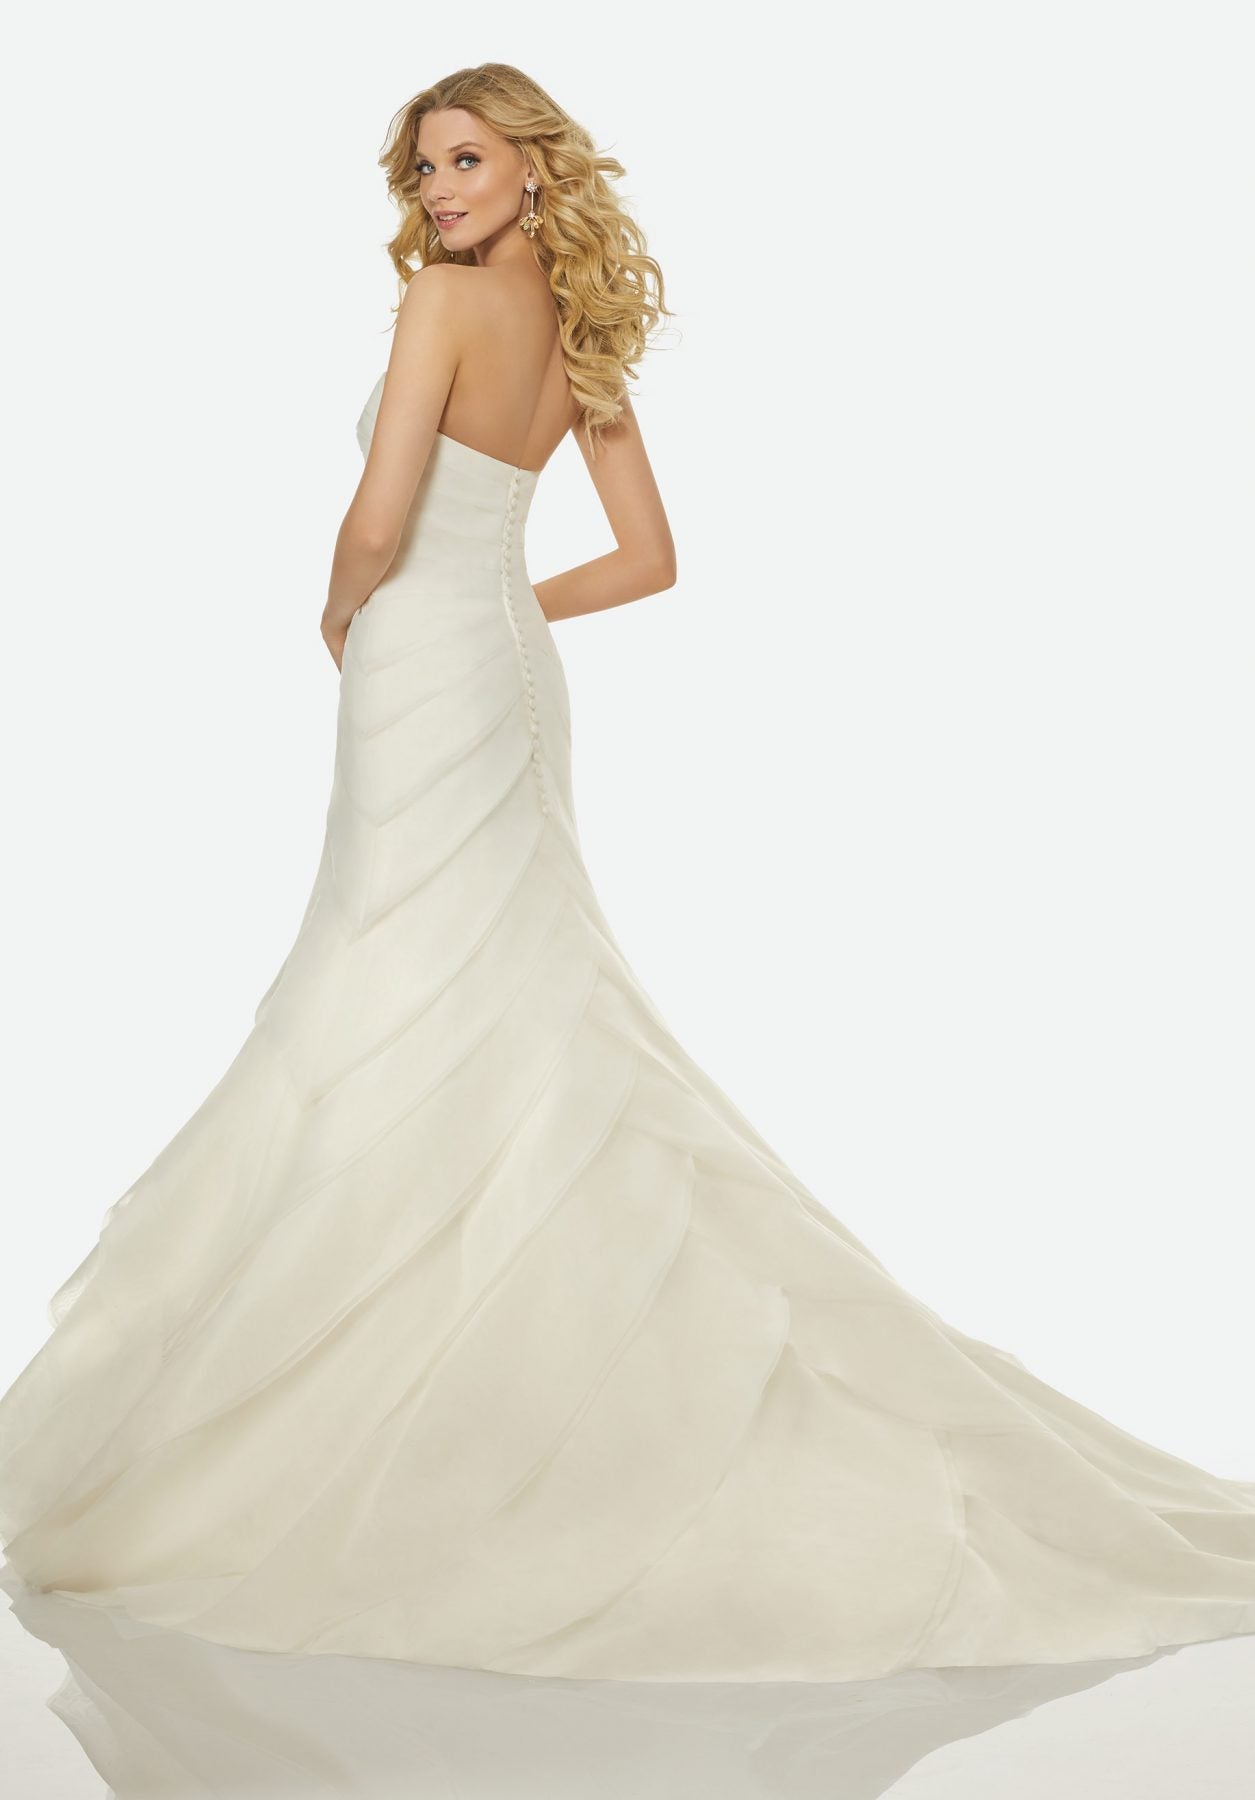 randy-fenoli-simple-a-line-wedding-dress-33592692-2-1255x1800.jpg